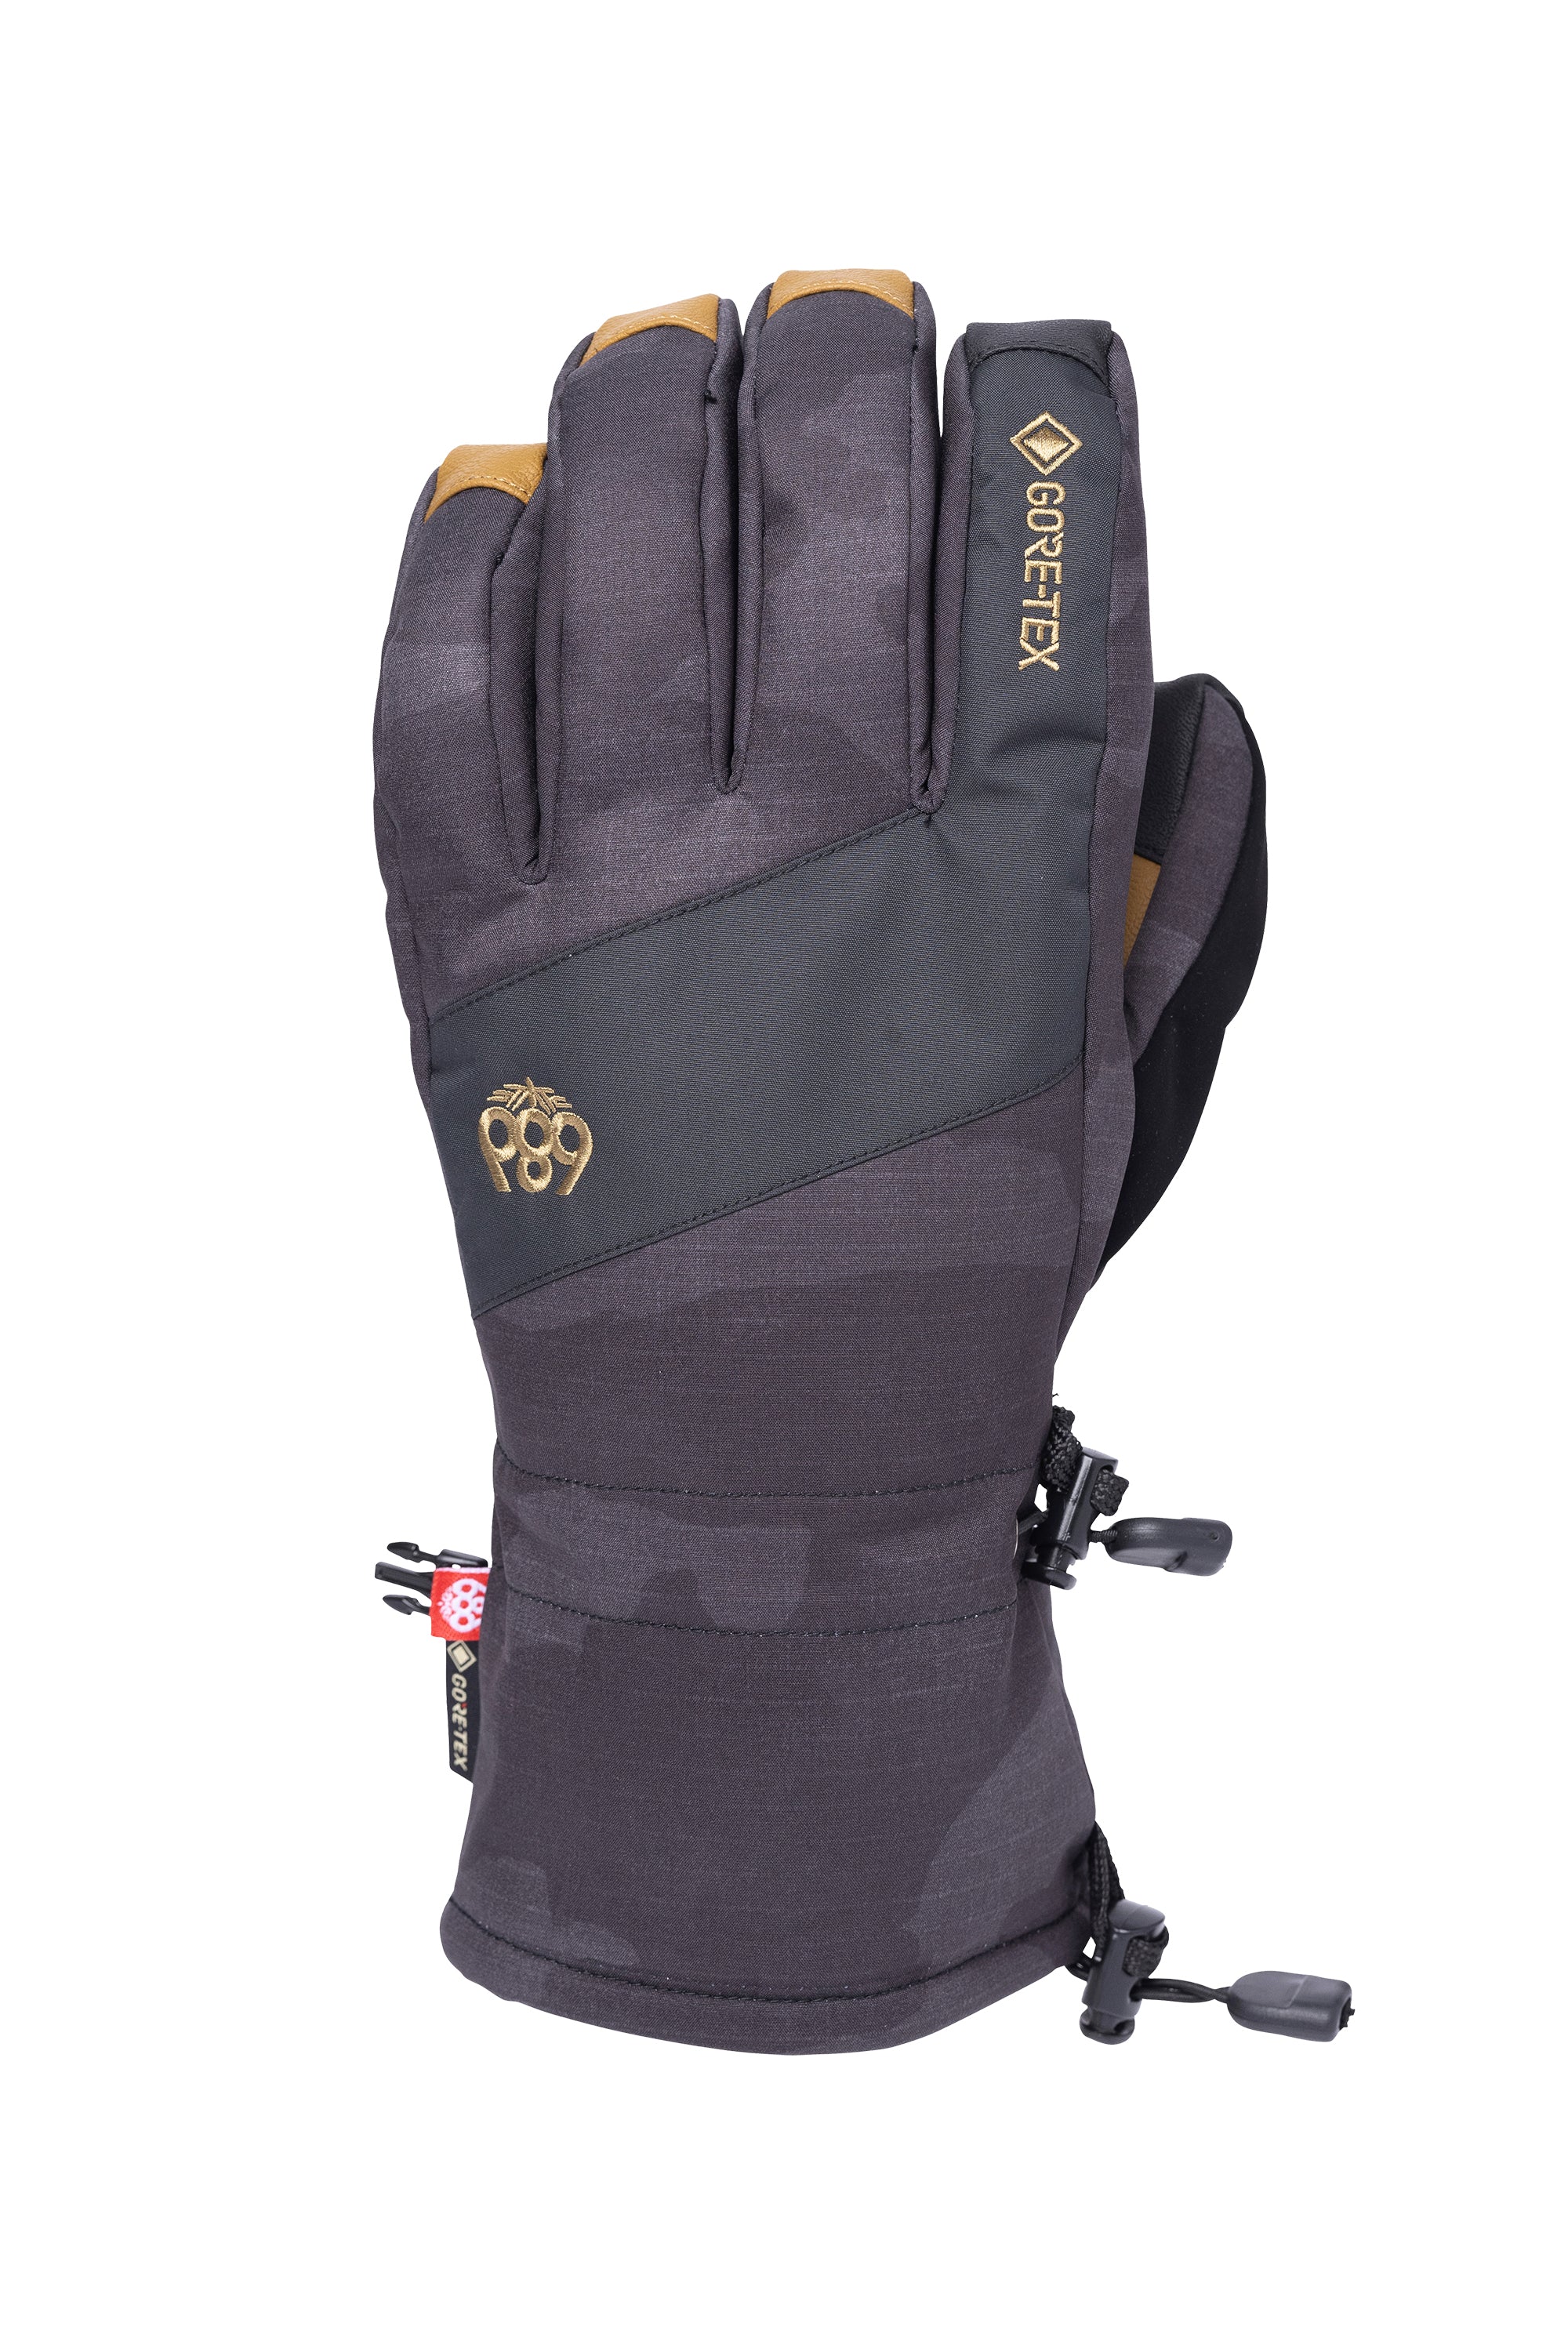 686 Gore-Tex Linear Glove - 88 Gear